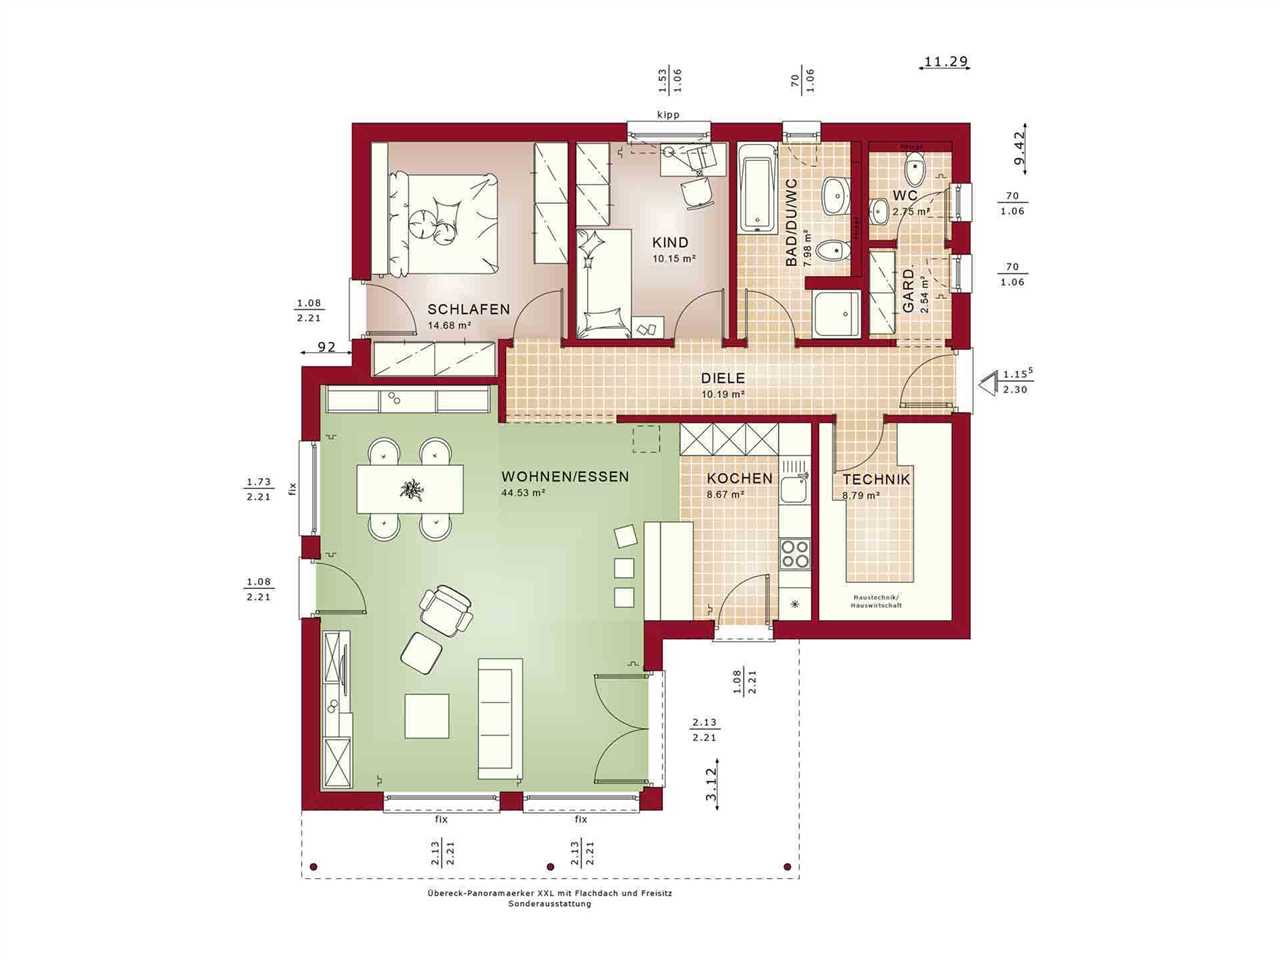 Grundriss Bungalow 100 qm mit 4 Zimmern Funktionale und stilvolle Gestaltungstipps